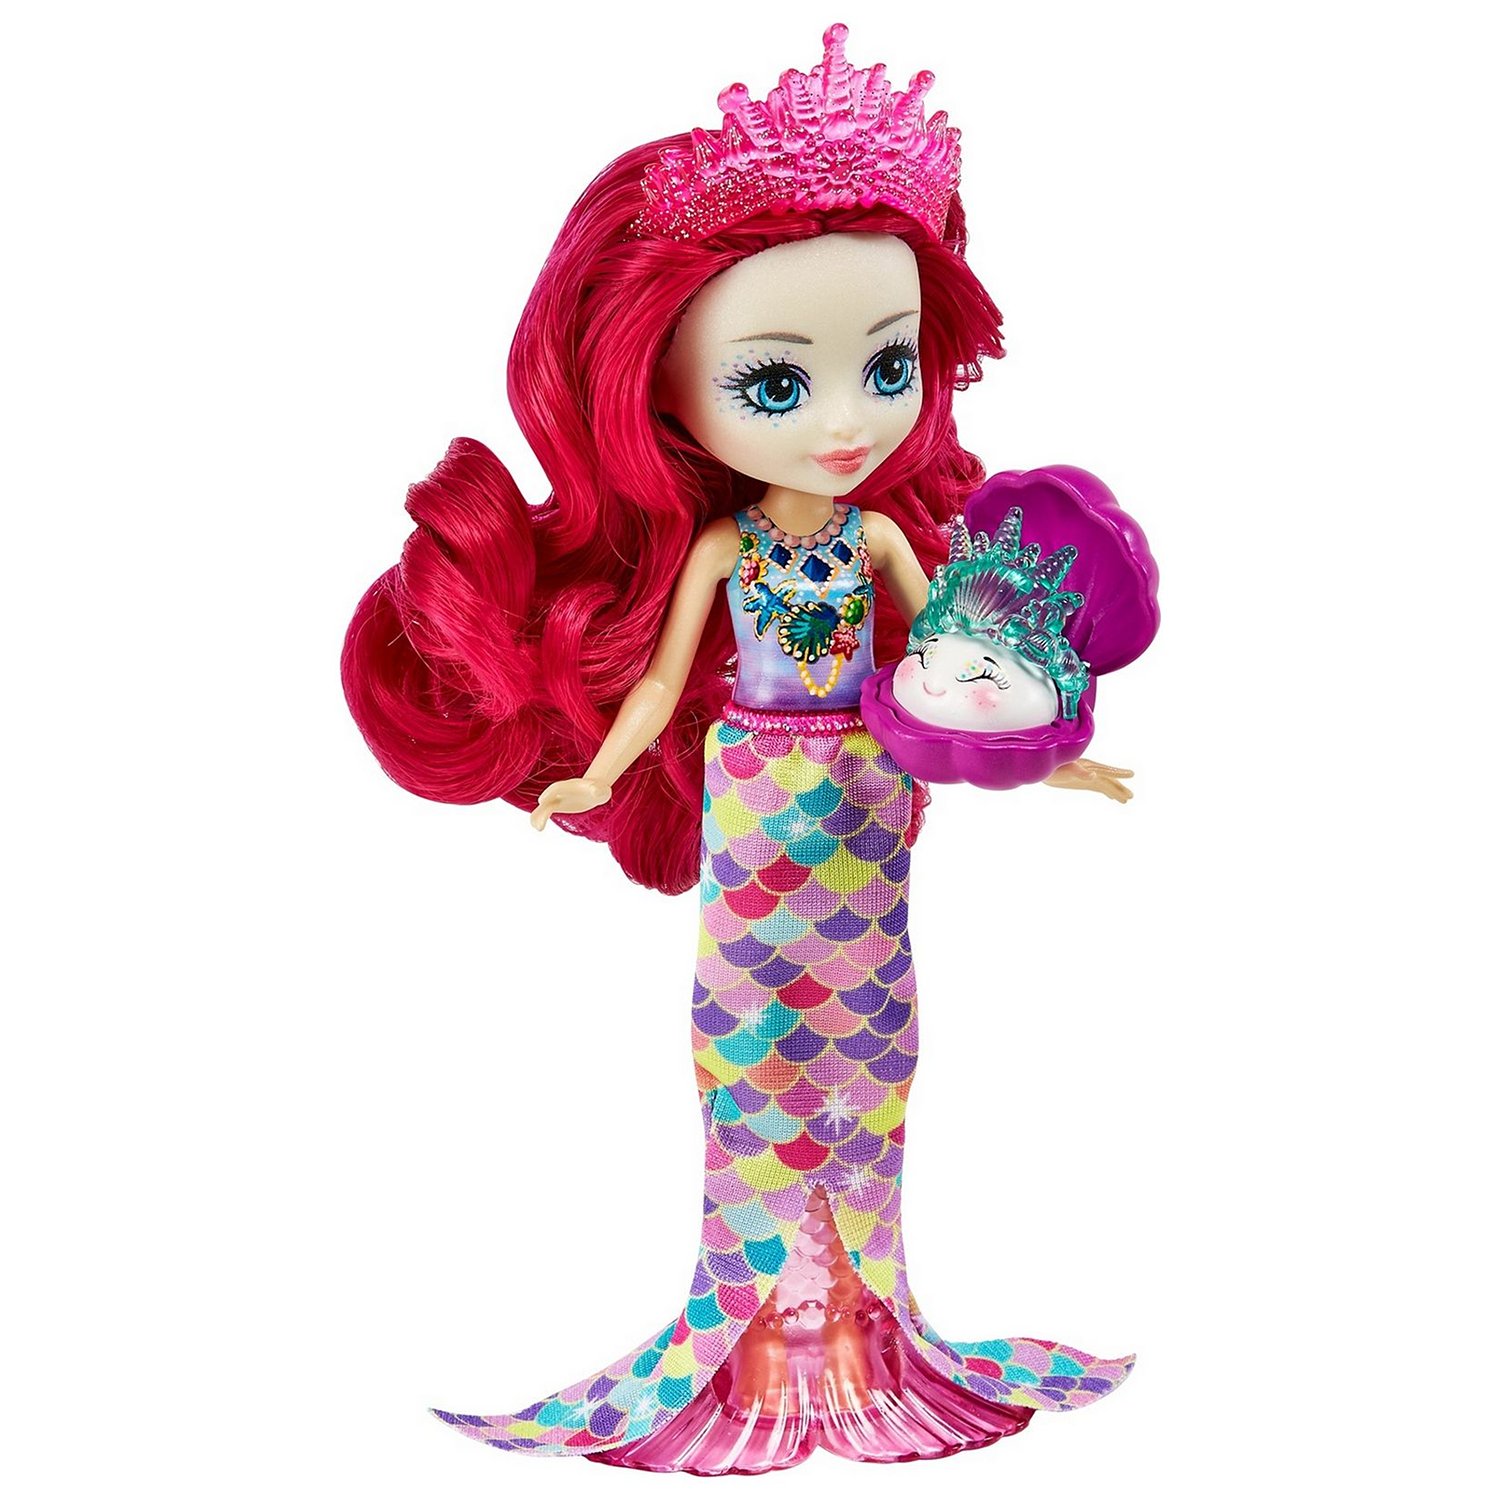 Набор игровой Enchantimals Магазин с сокровищами океана кукла+питомец с аксессуарами HCF71